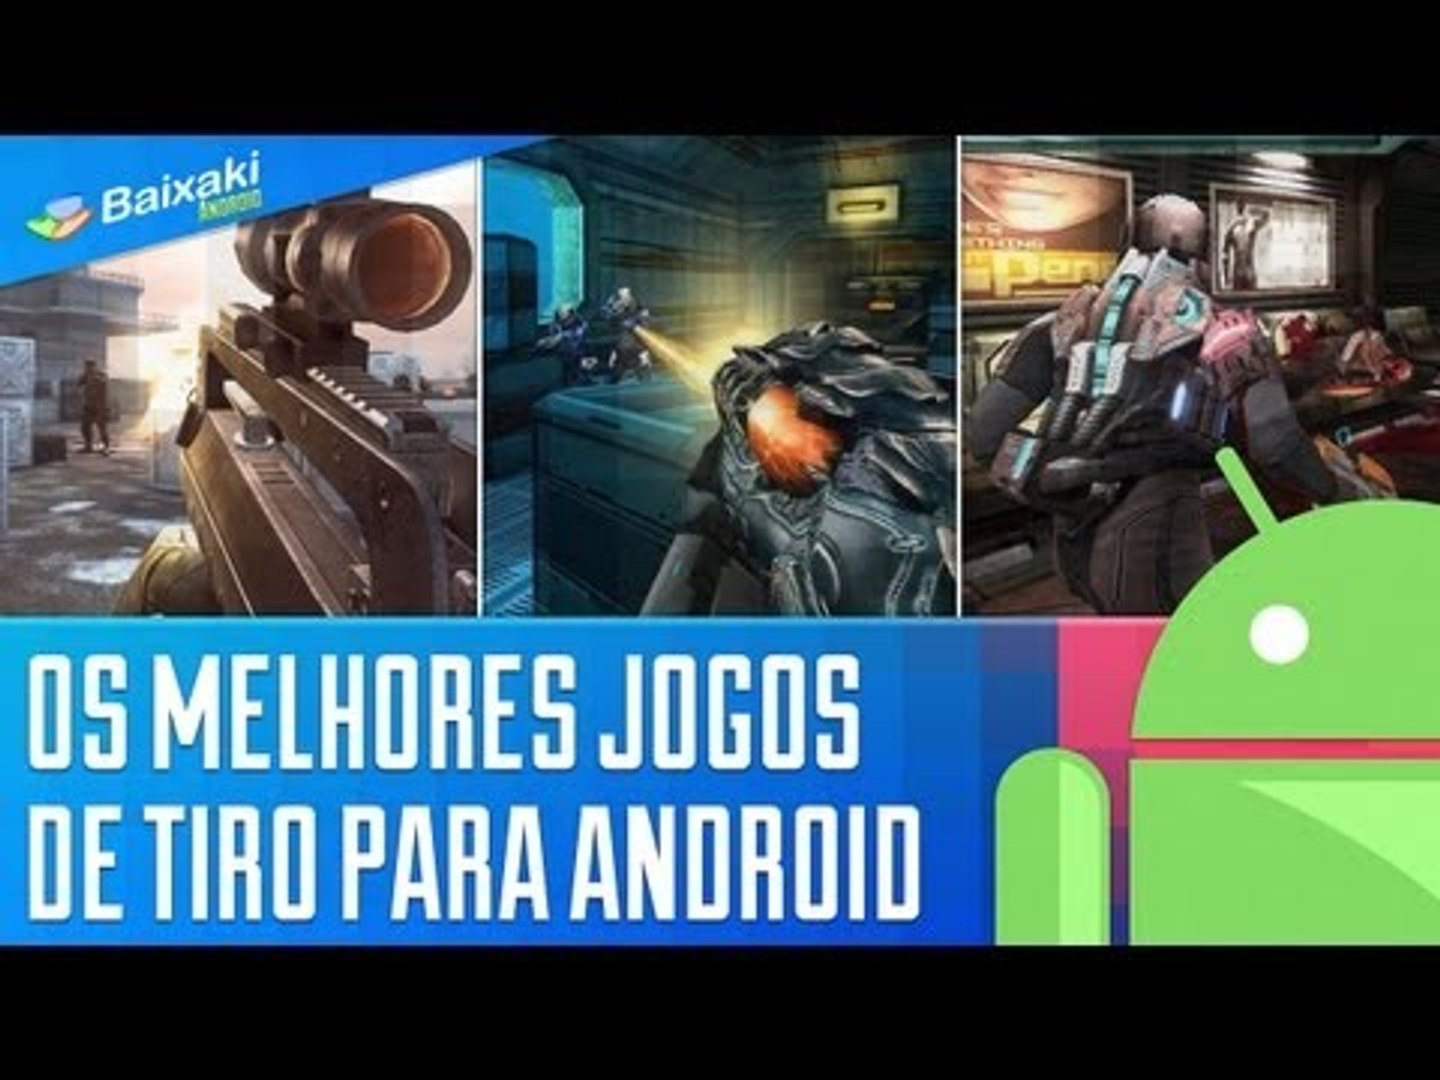 Os melhores jogos de tiro para Android [Dicas] - Baixaki - video